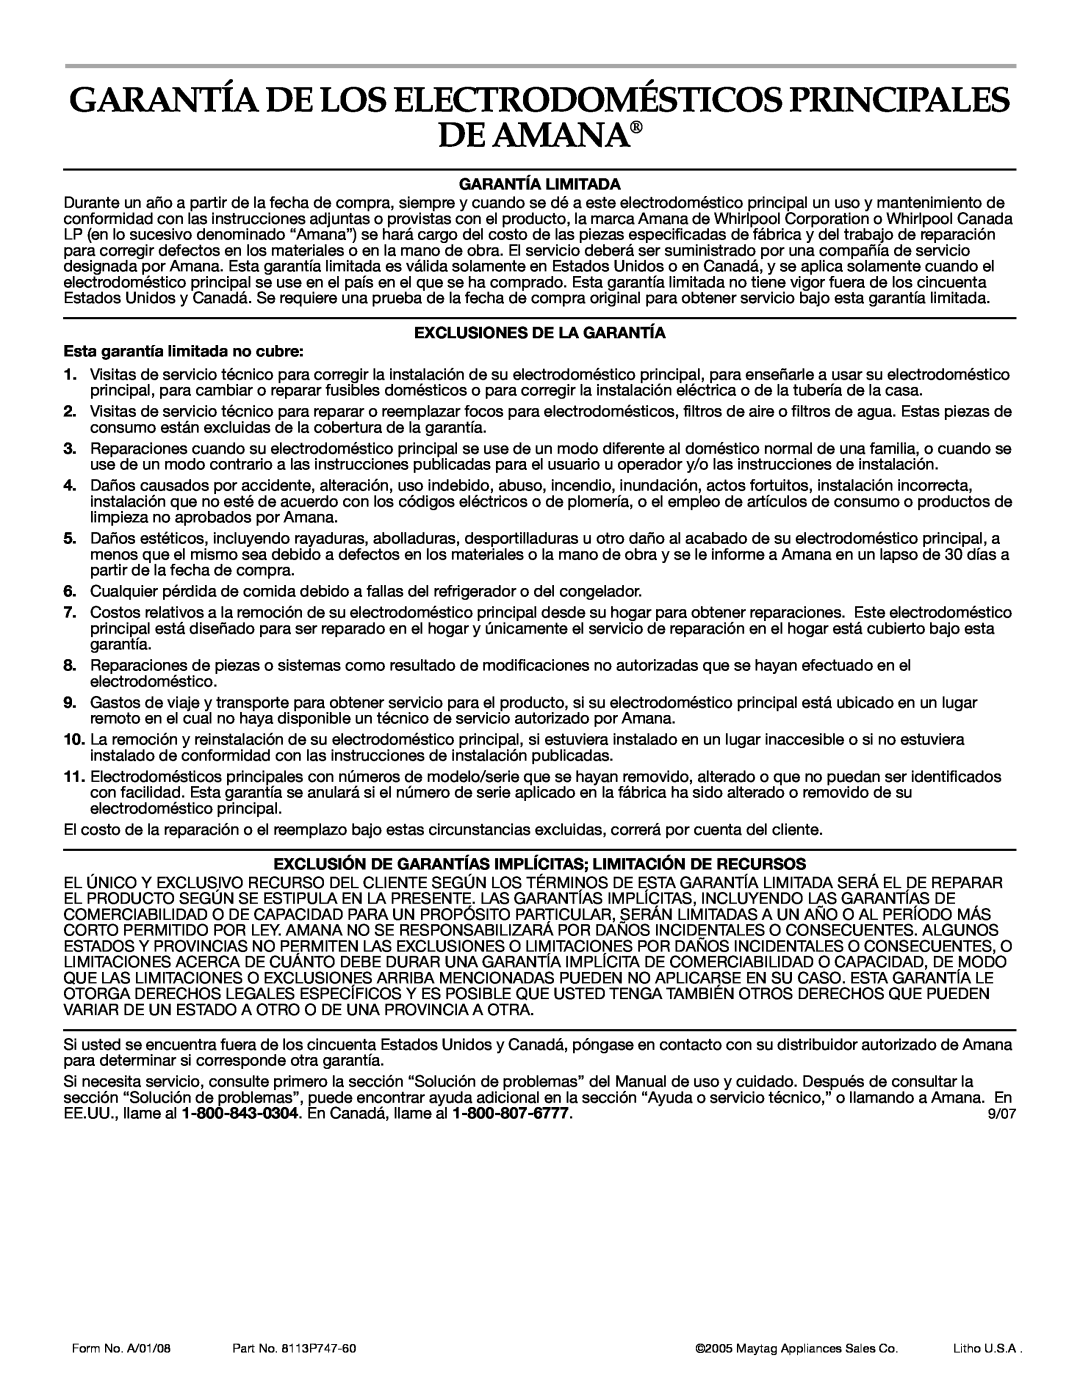 Amana AER5722CAS manual De Amana, Garantía De Los Electrodomésticos Principales, Garantía Limitada 